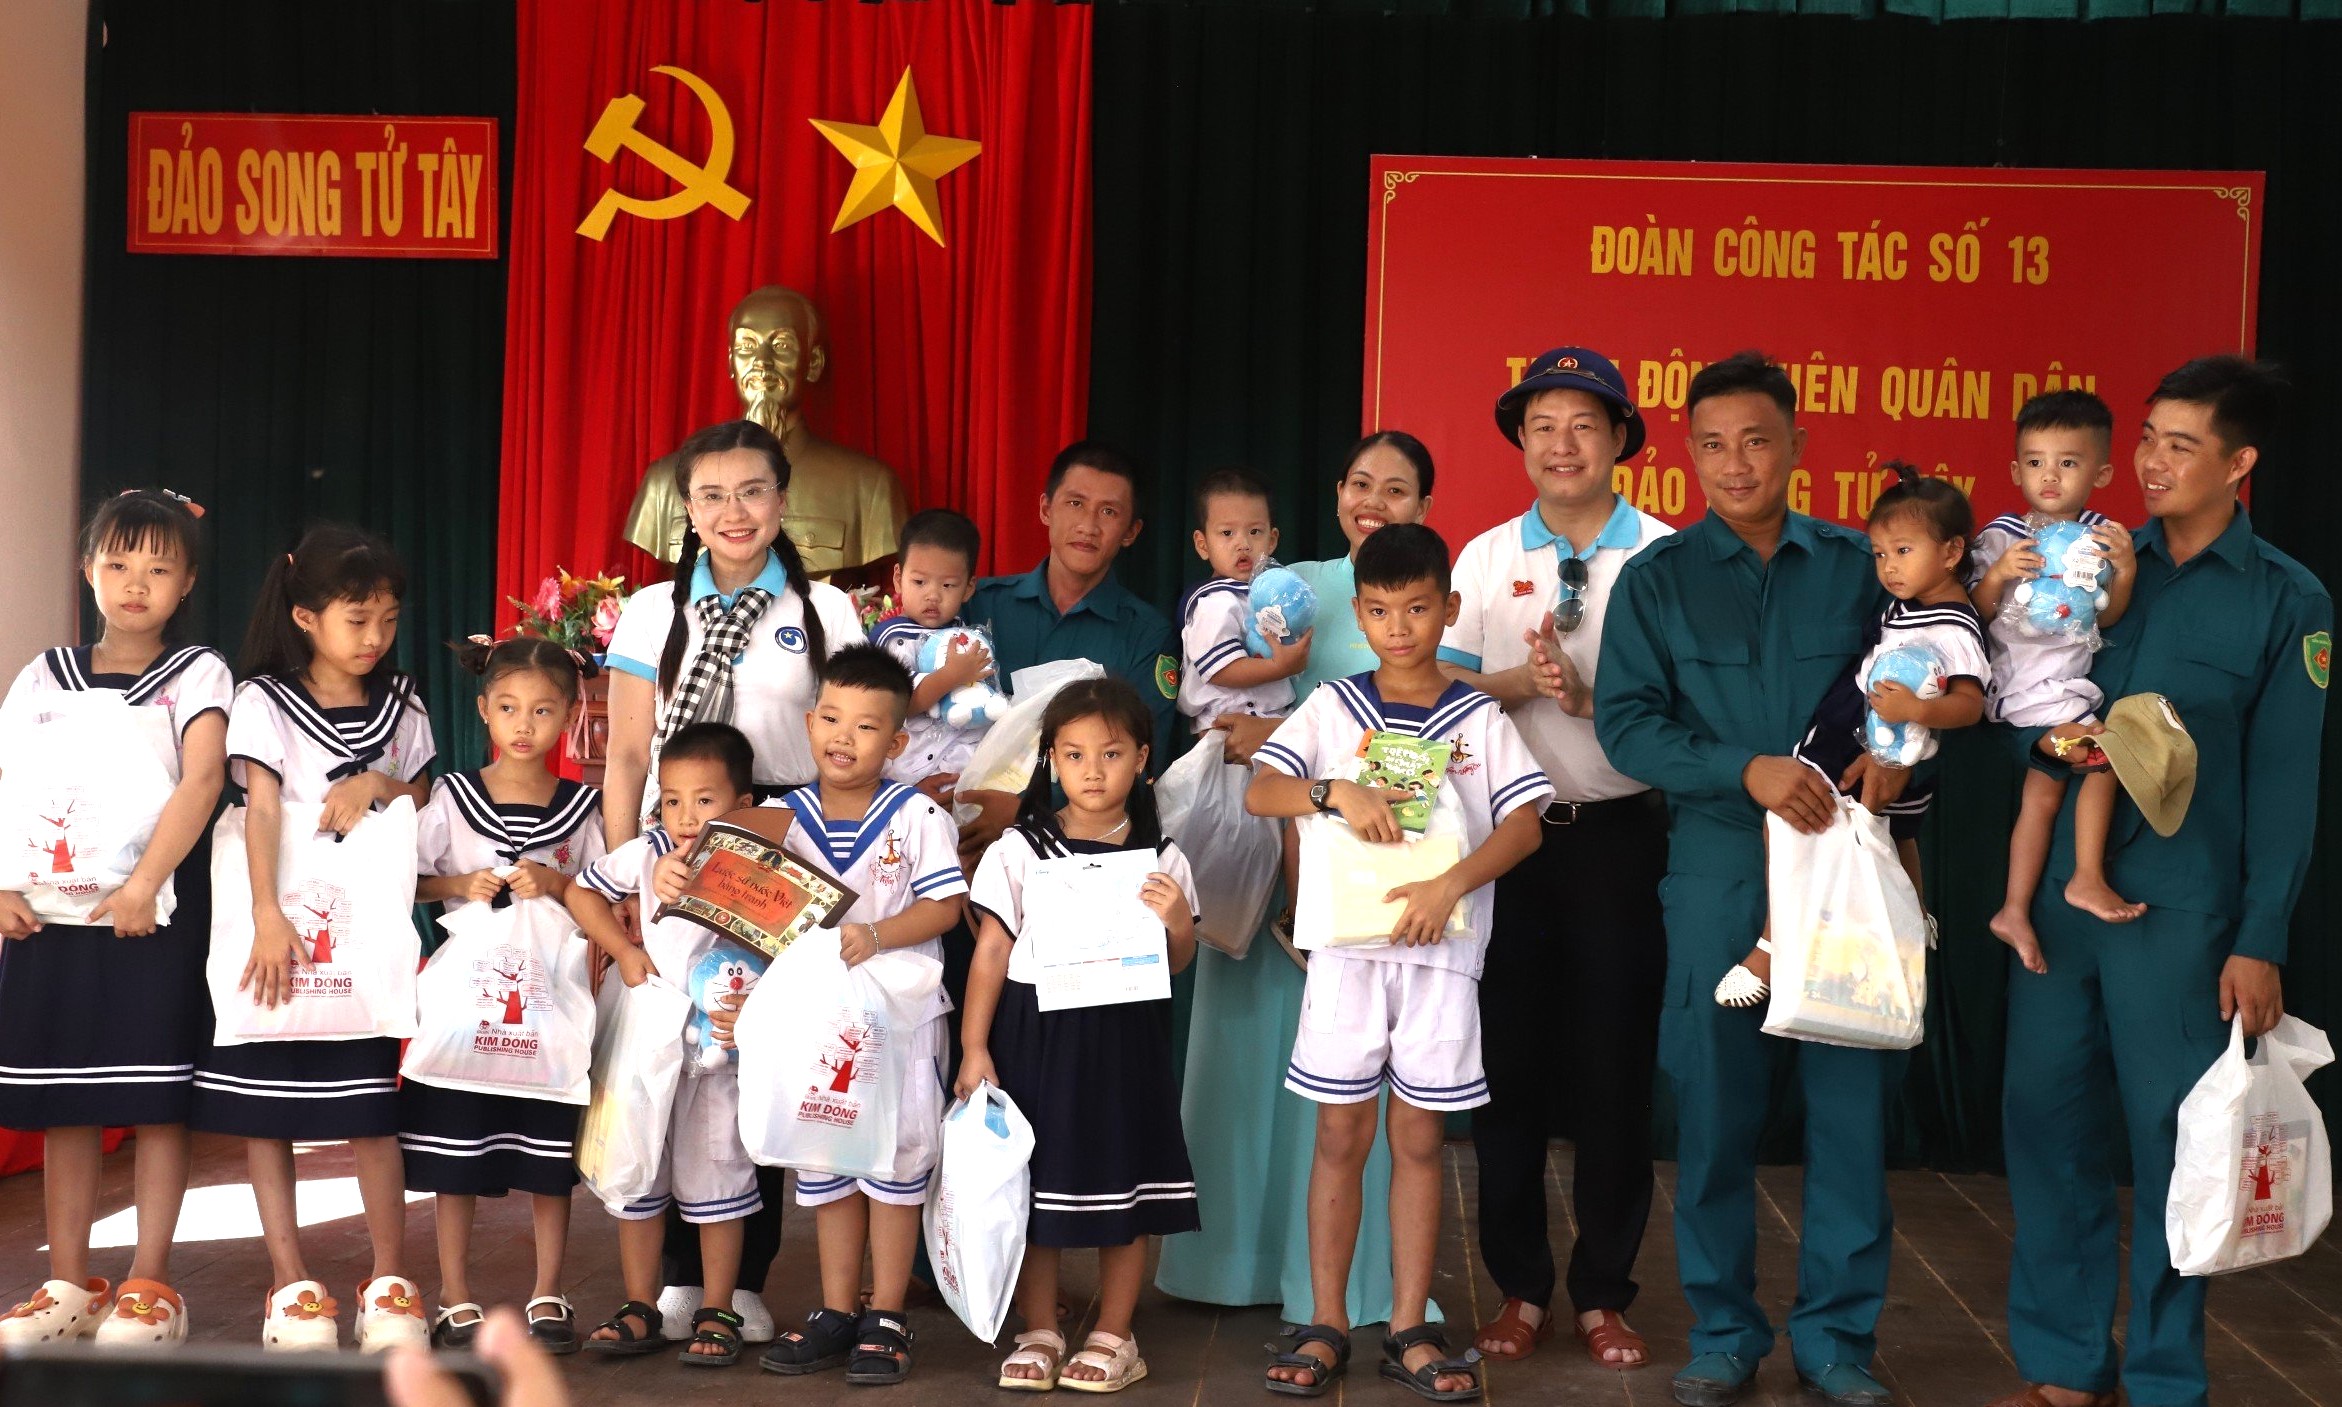 Chị Trang tặng quà cho các thiếu nhi ở đảo Song Tử Tây